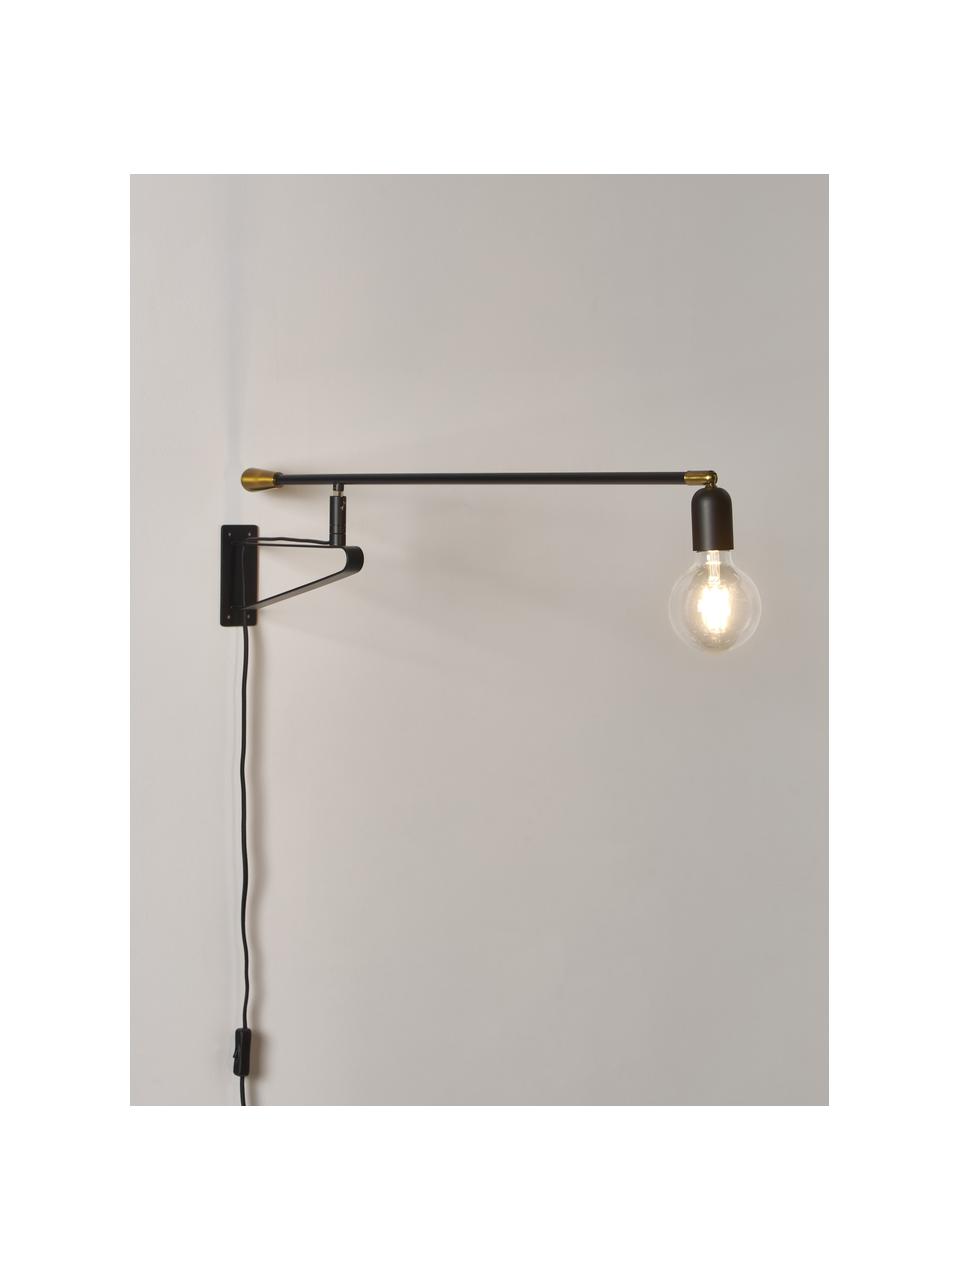 Verstelbare wandlamp Danon, Zwart, goudkleurig, B 83 x L 200 cm